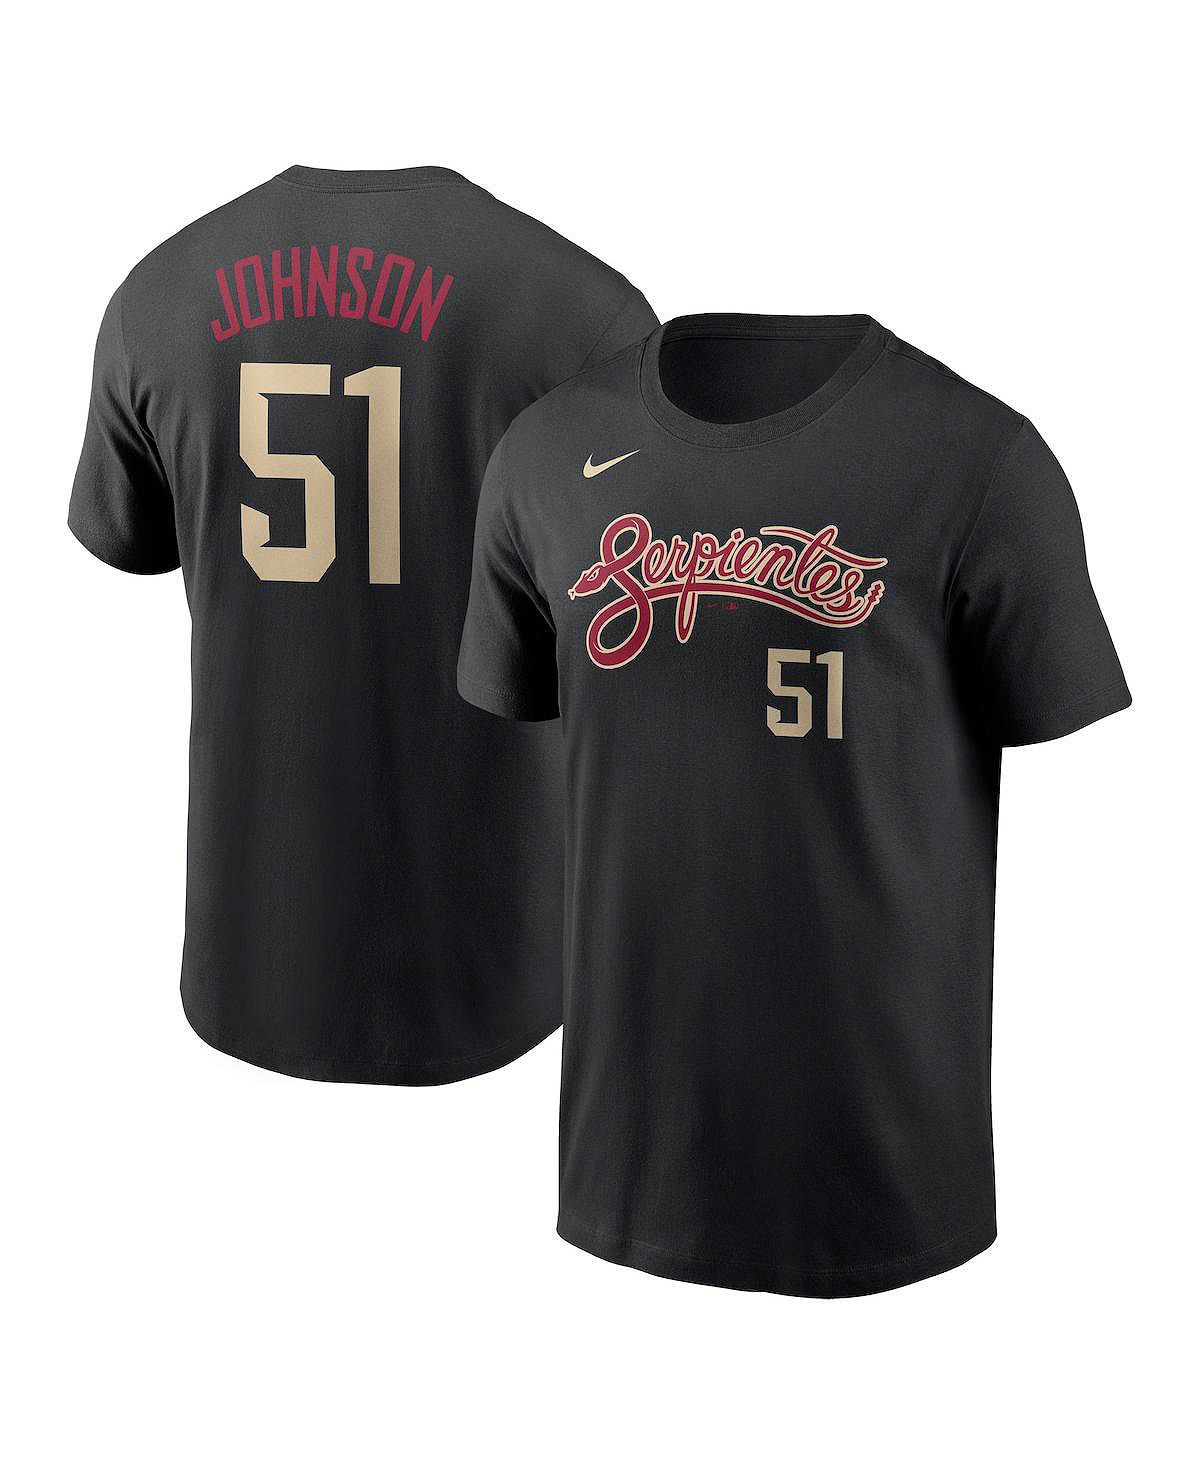 Мужская черная футболка Randy Johnson Arizona Diamondbacks City Connect с именем и номером Nike мужская черная футболка randy johnson arizona diamondbacks city connect с именем и номером nike